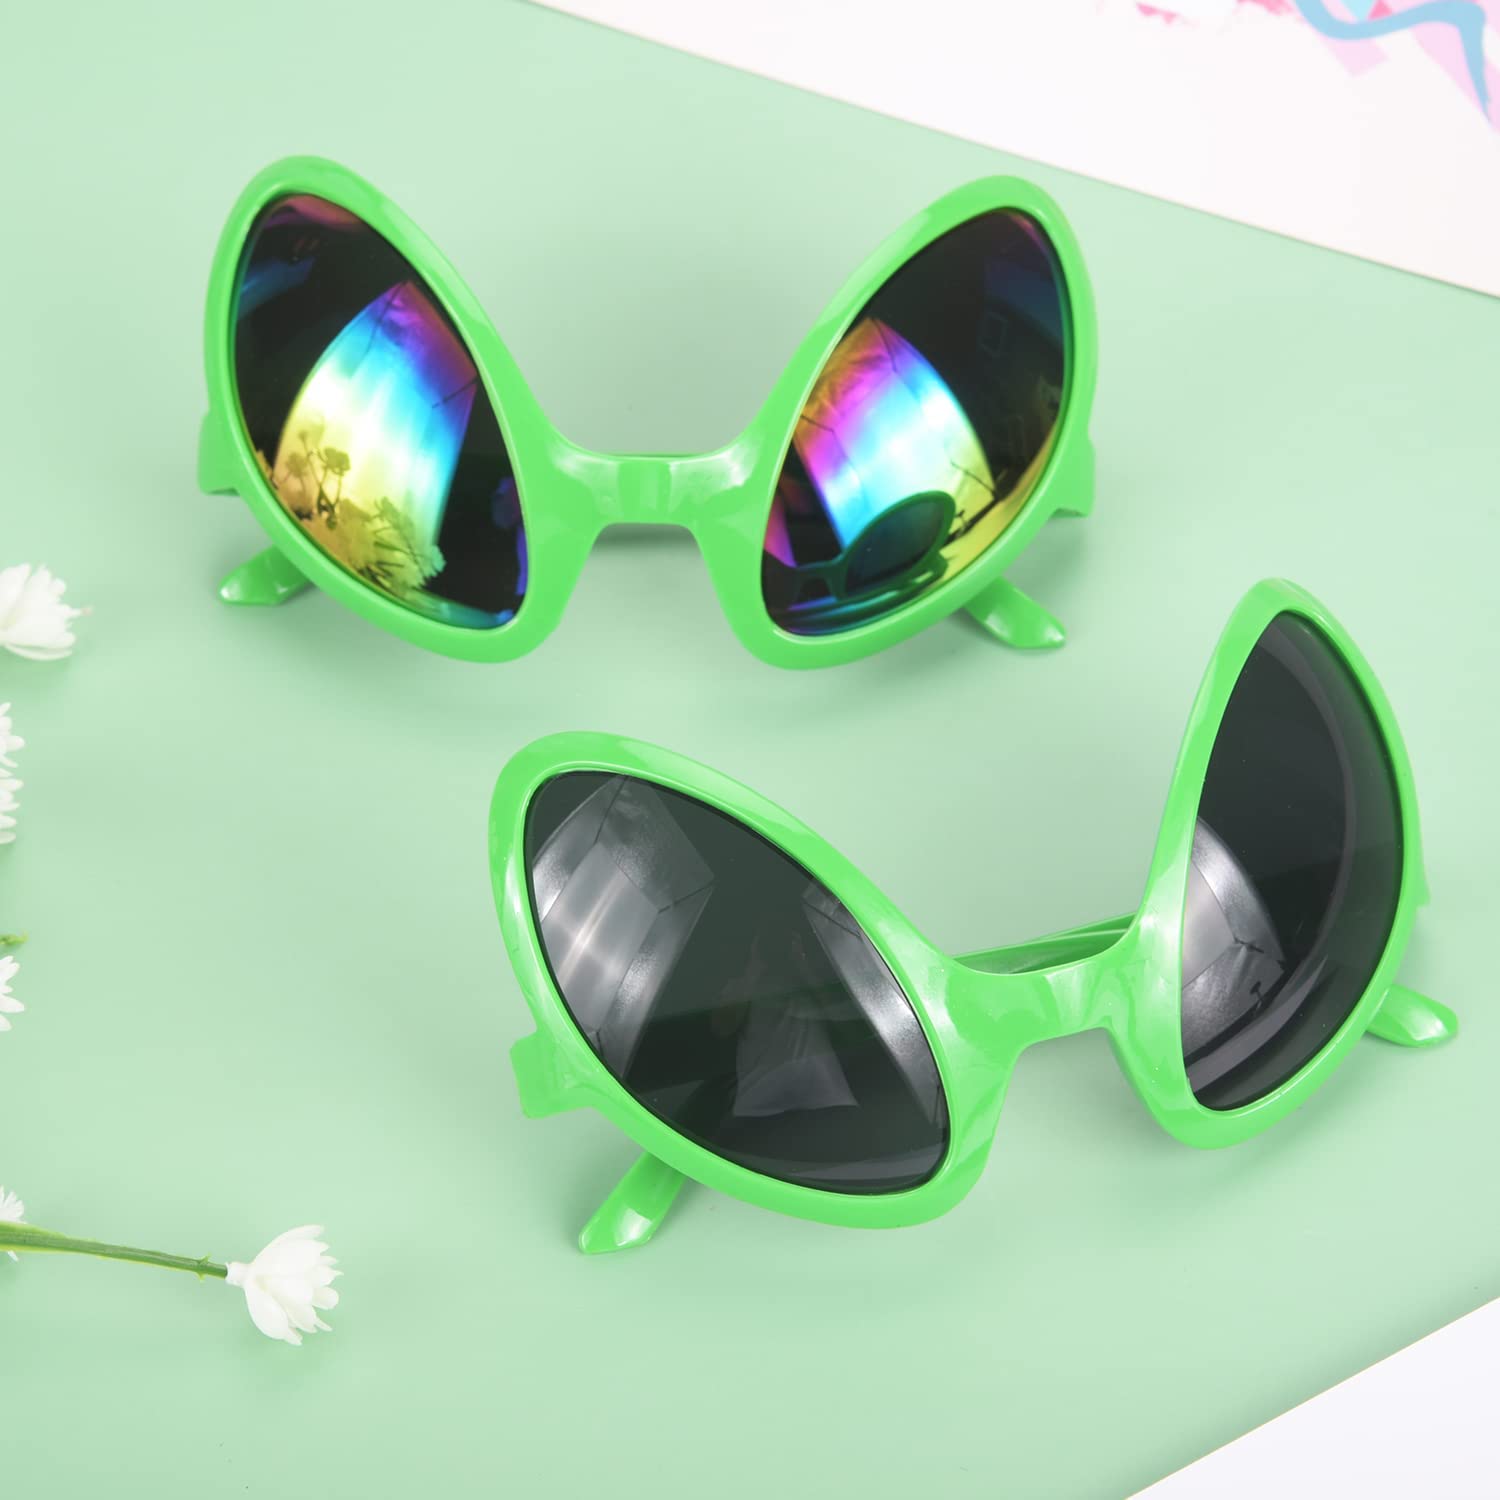 gafas alien – Compra gafas alien con envío gratis en AliExpress version